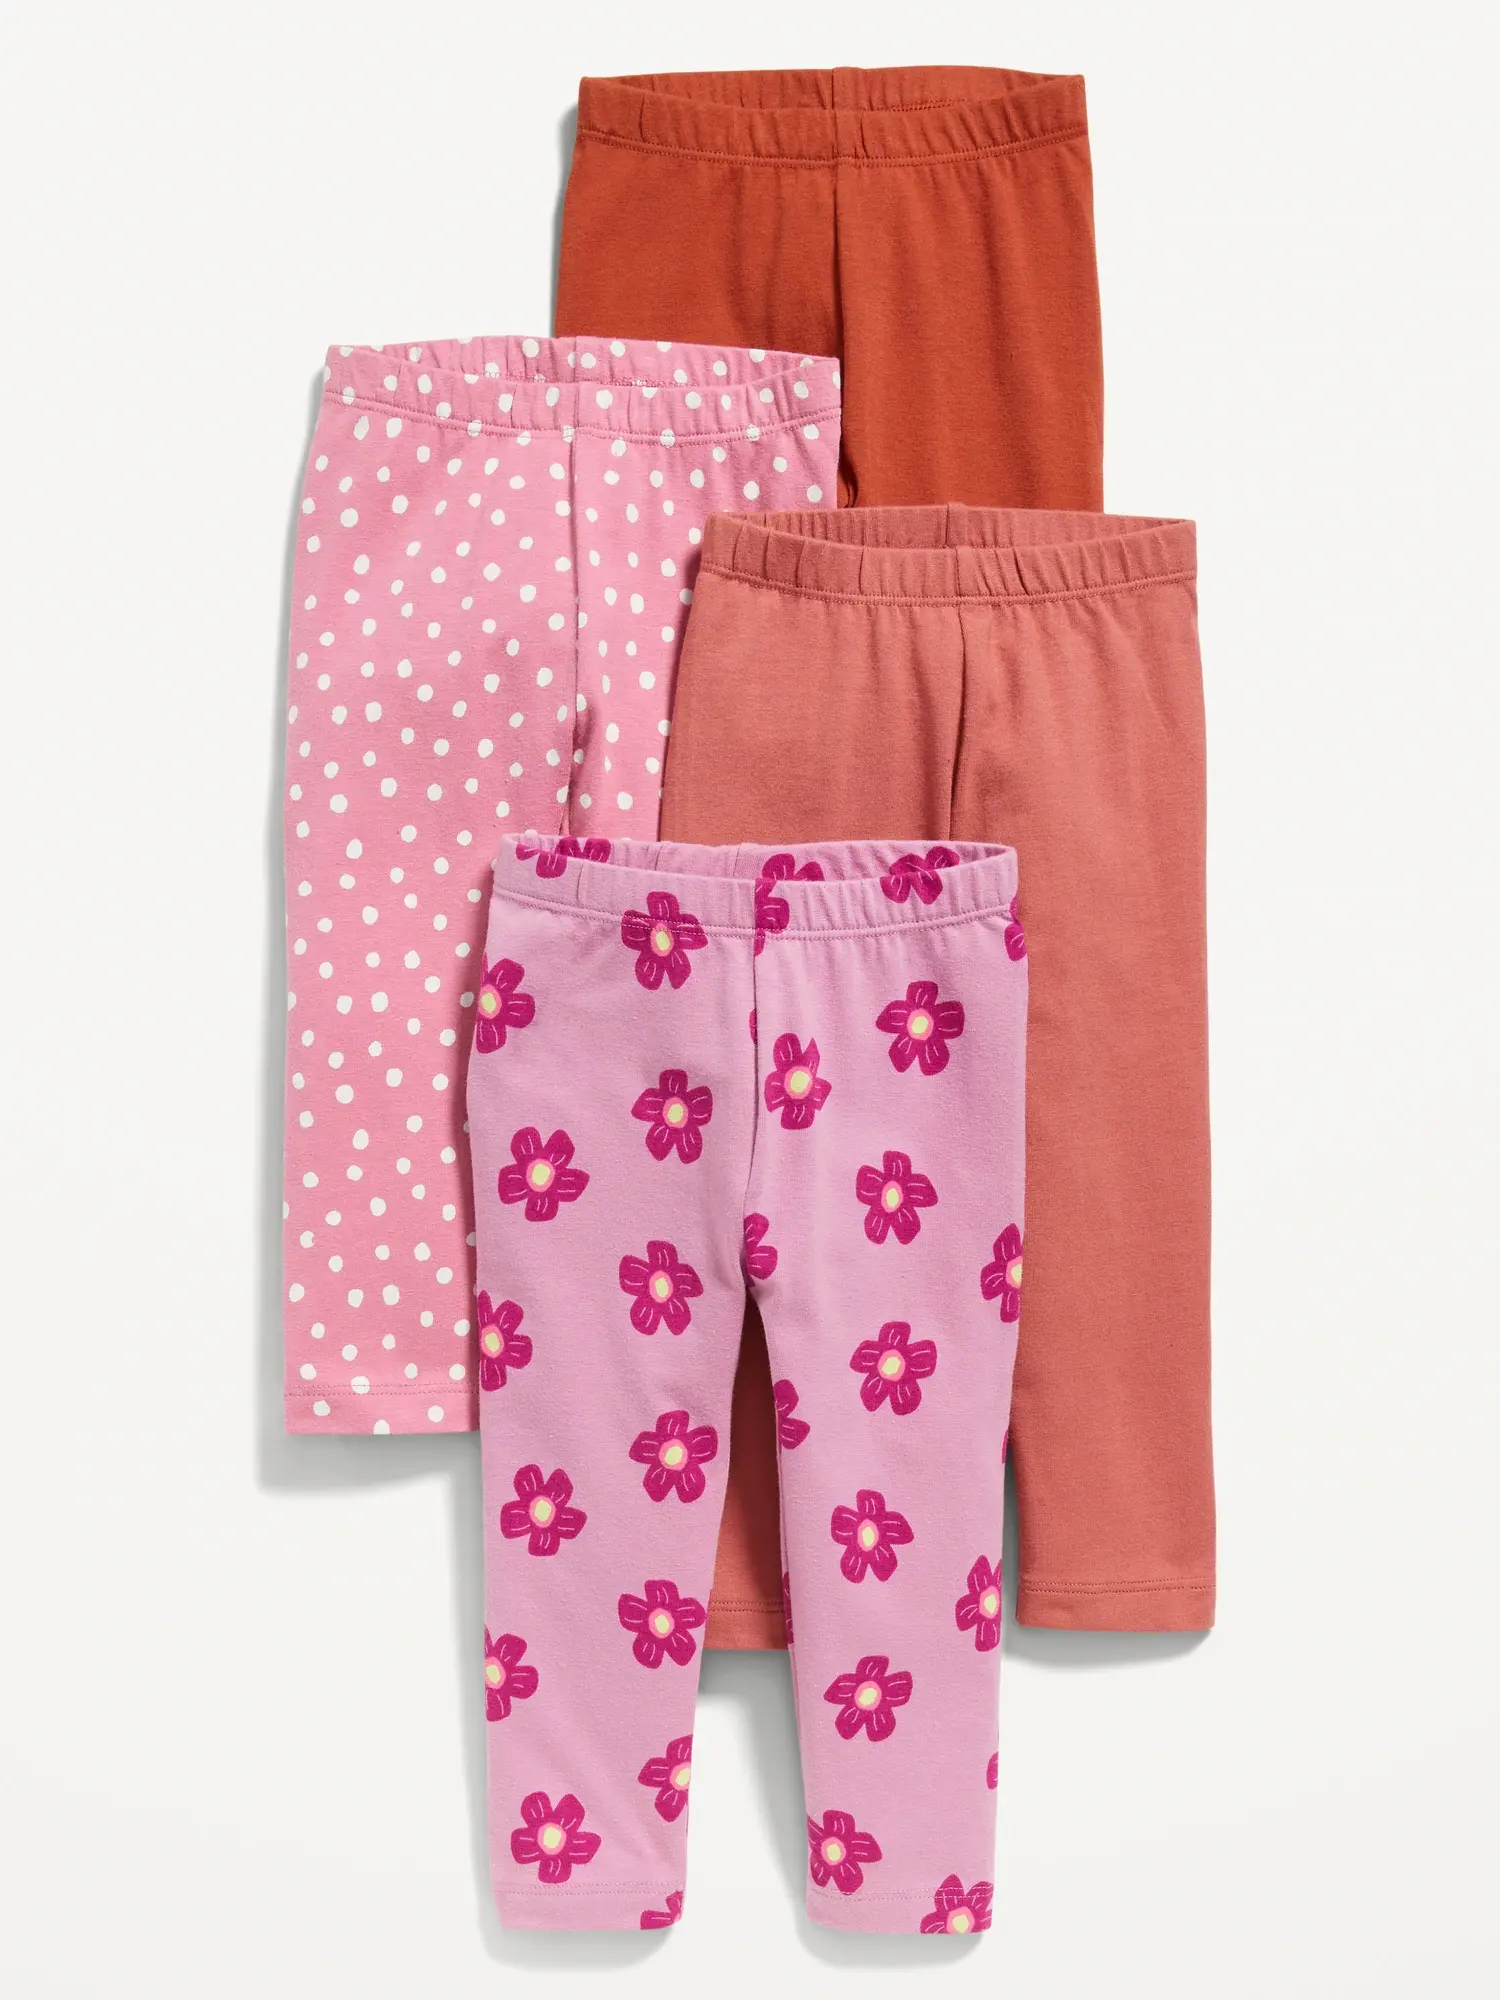 Old Navy Leggings 4-Pack for Toddler Girls pink. 1